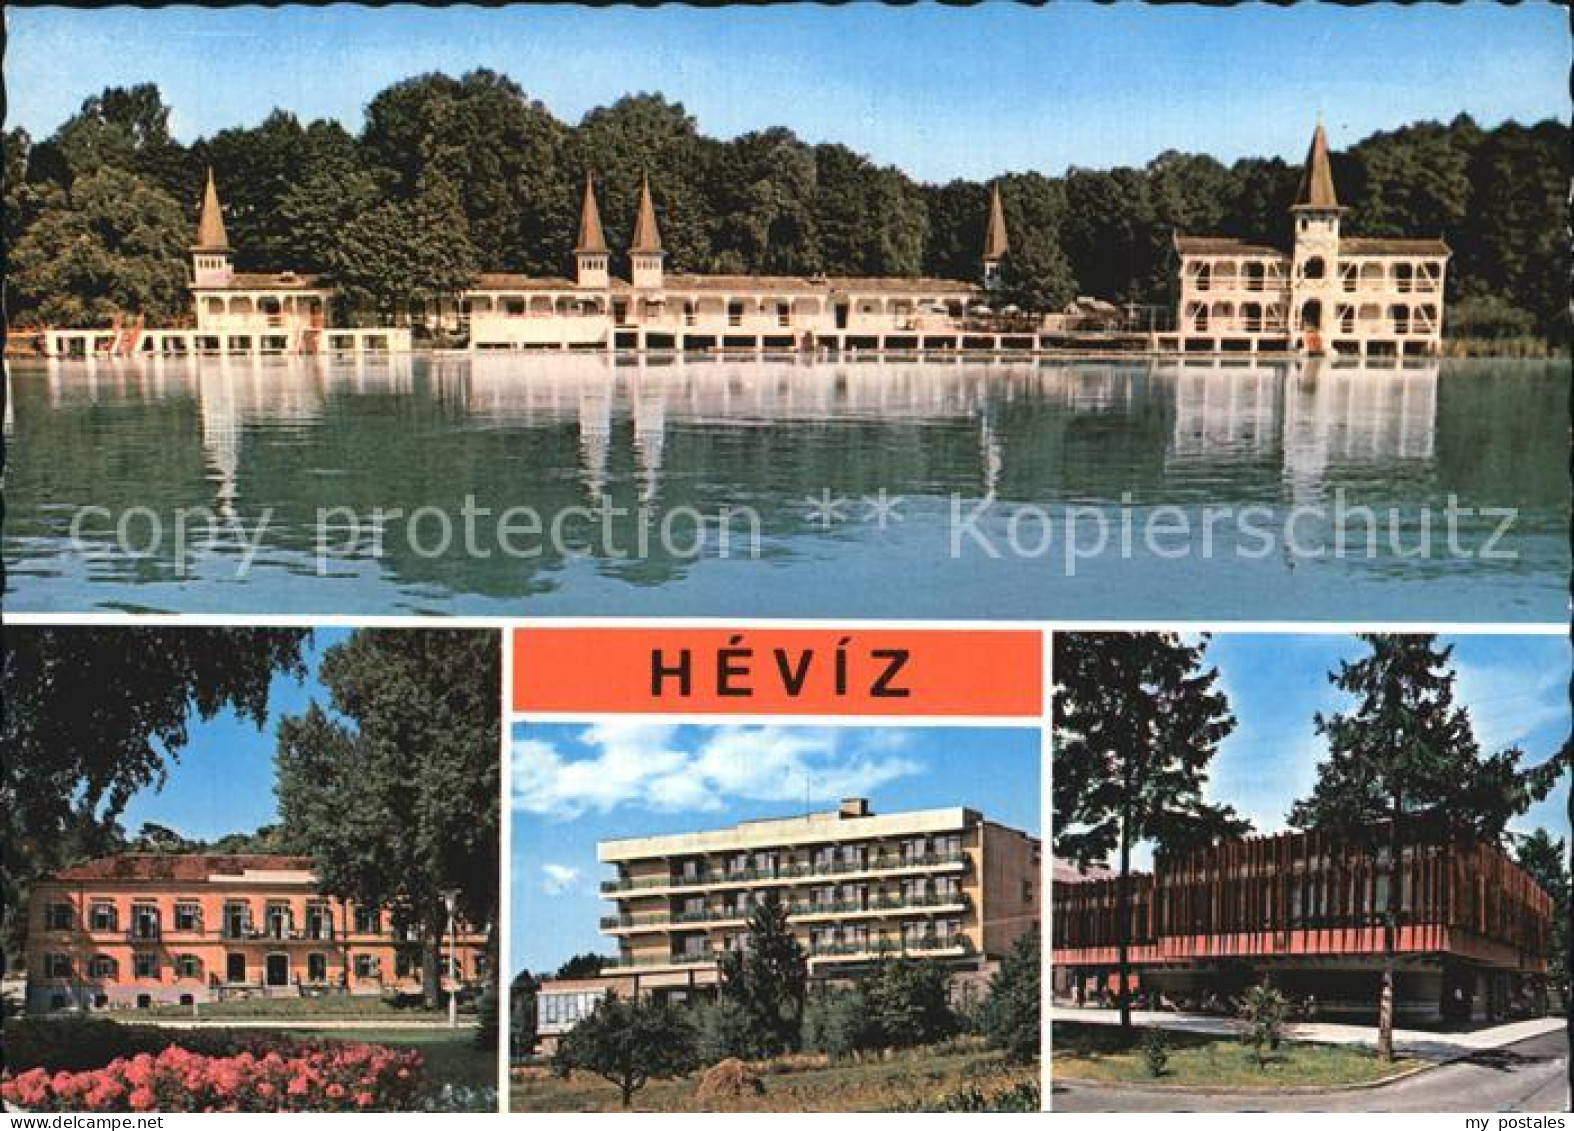 72527687 Hevizgyogyfuerdoe Heilbad Thermalsee Kurhotels Ungarn - Hongrie